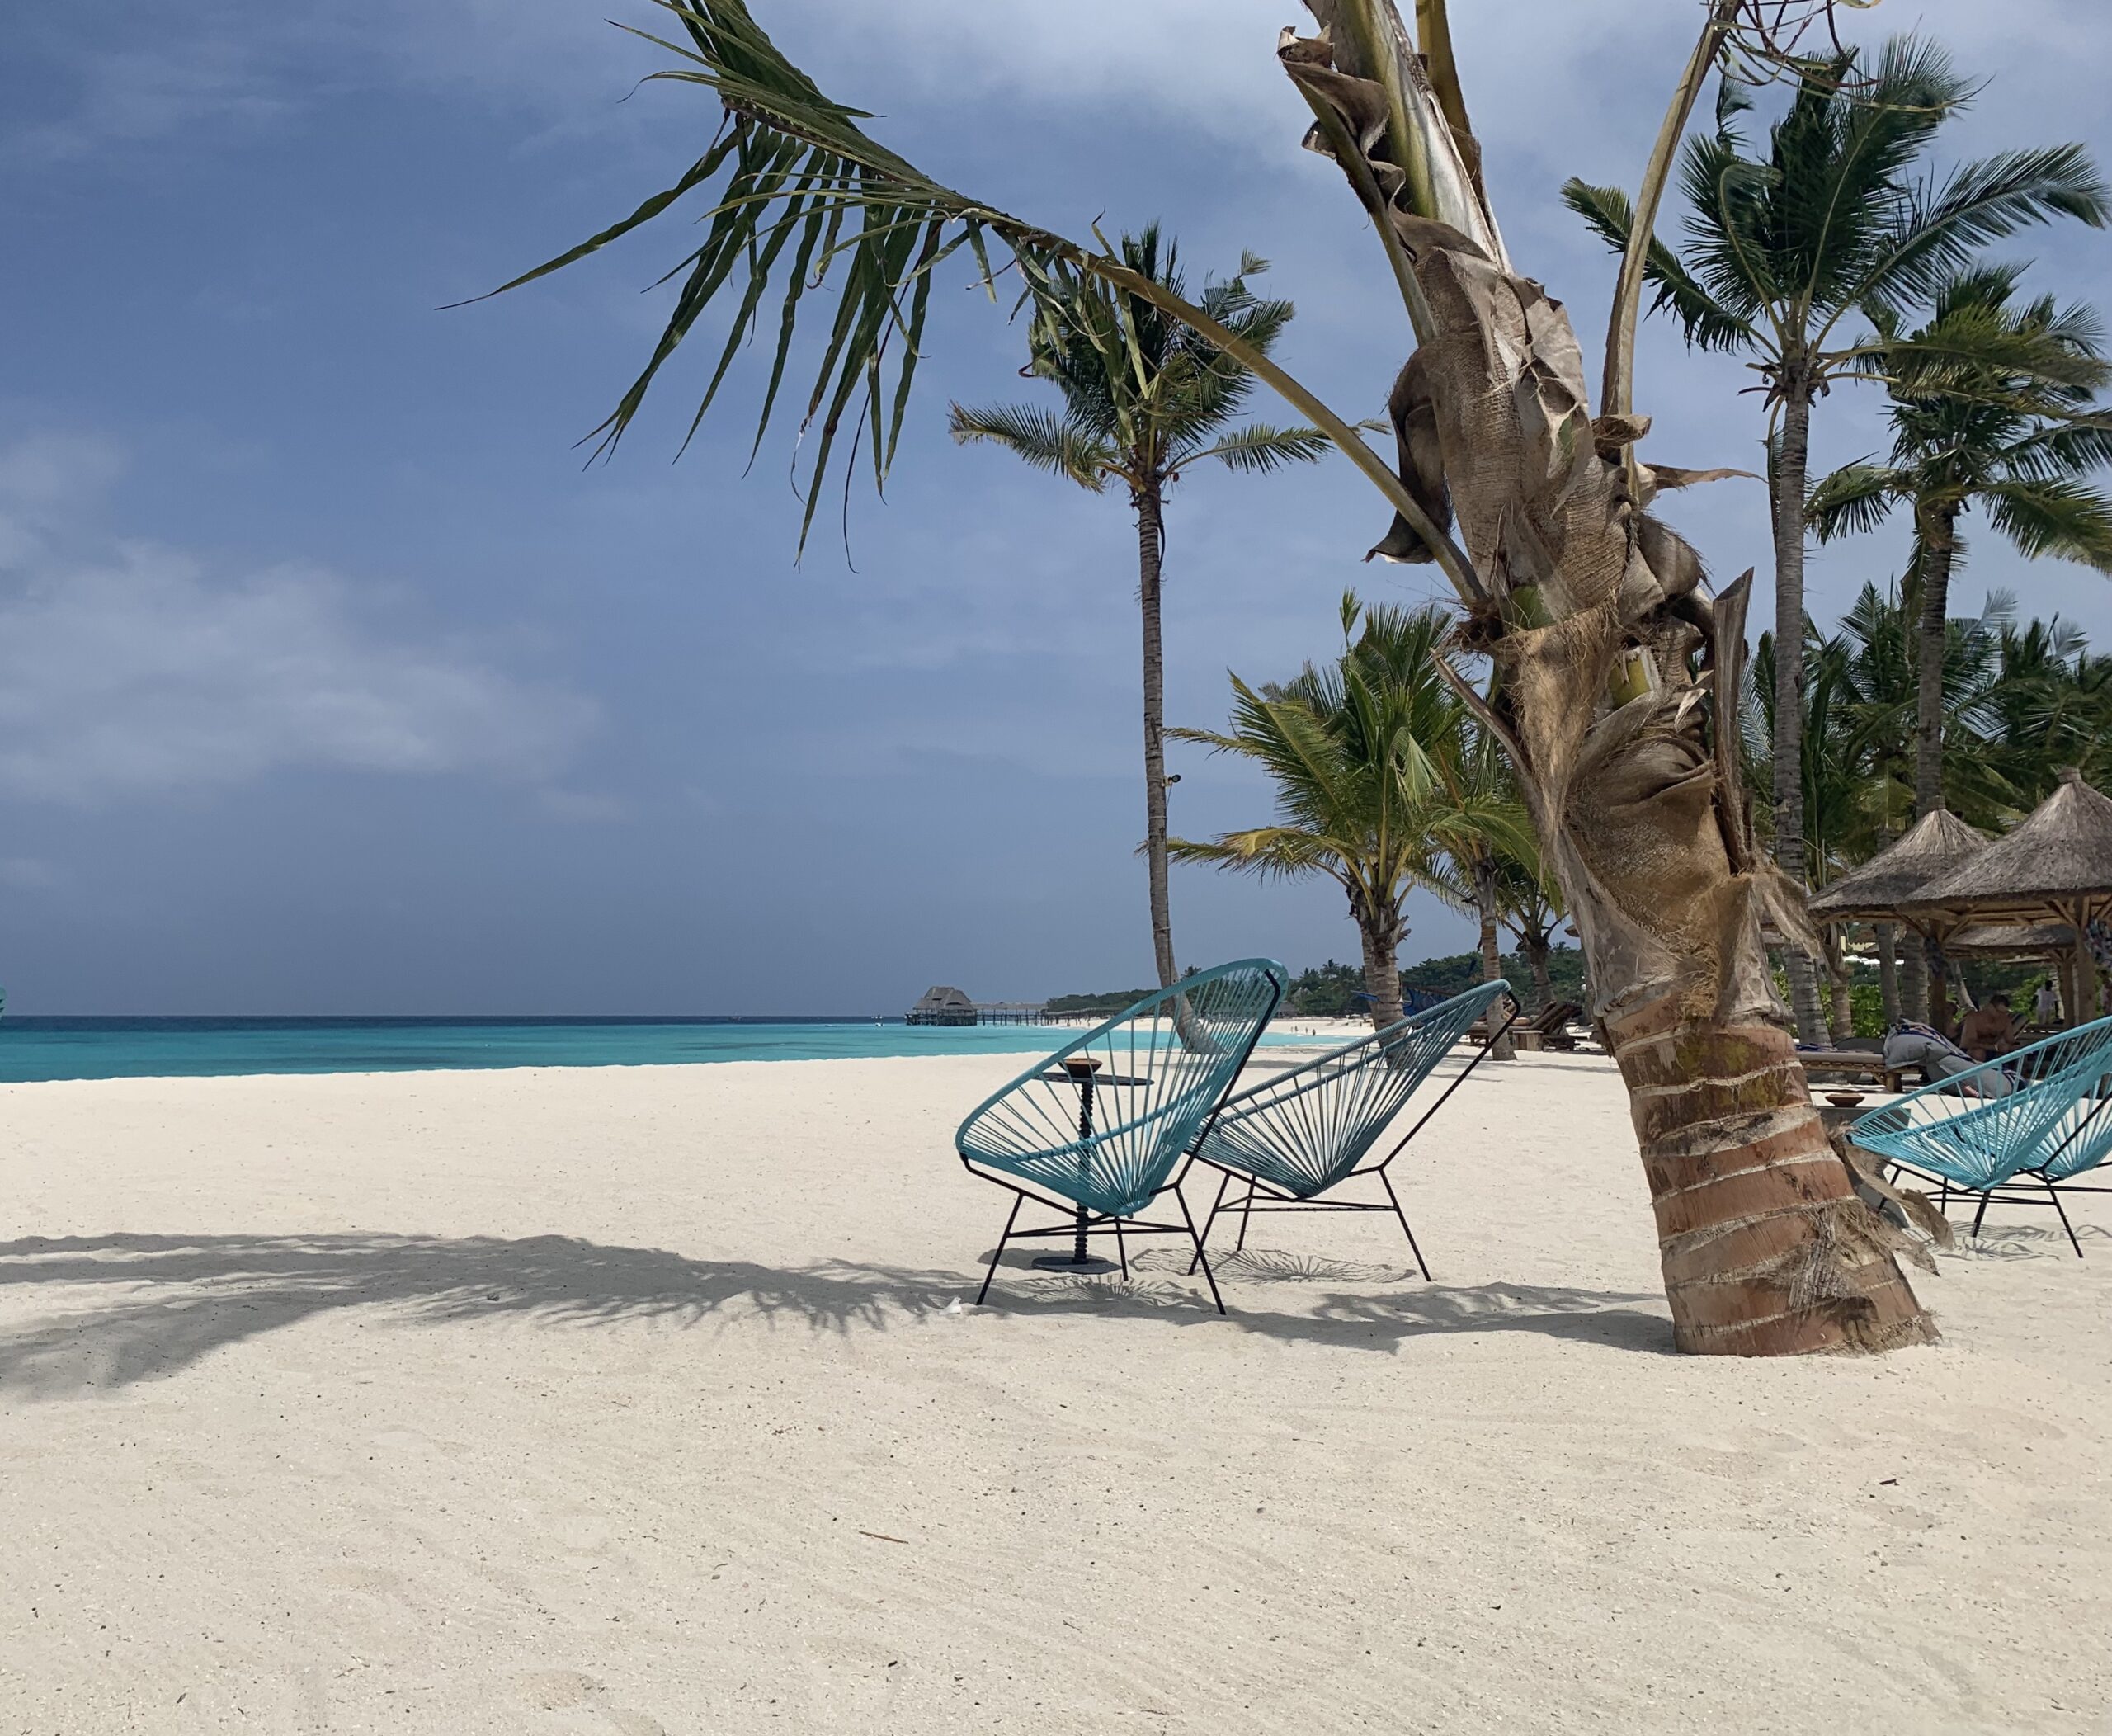 Stole under en palme på stranden på Zanzibar